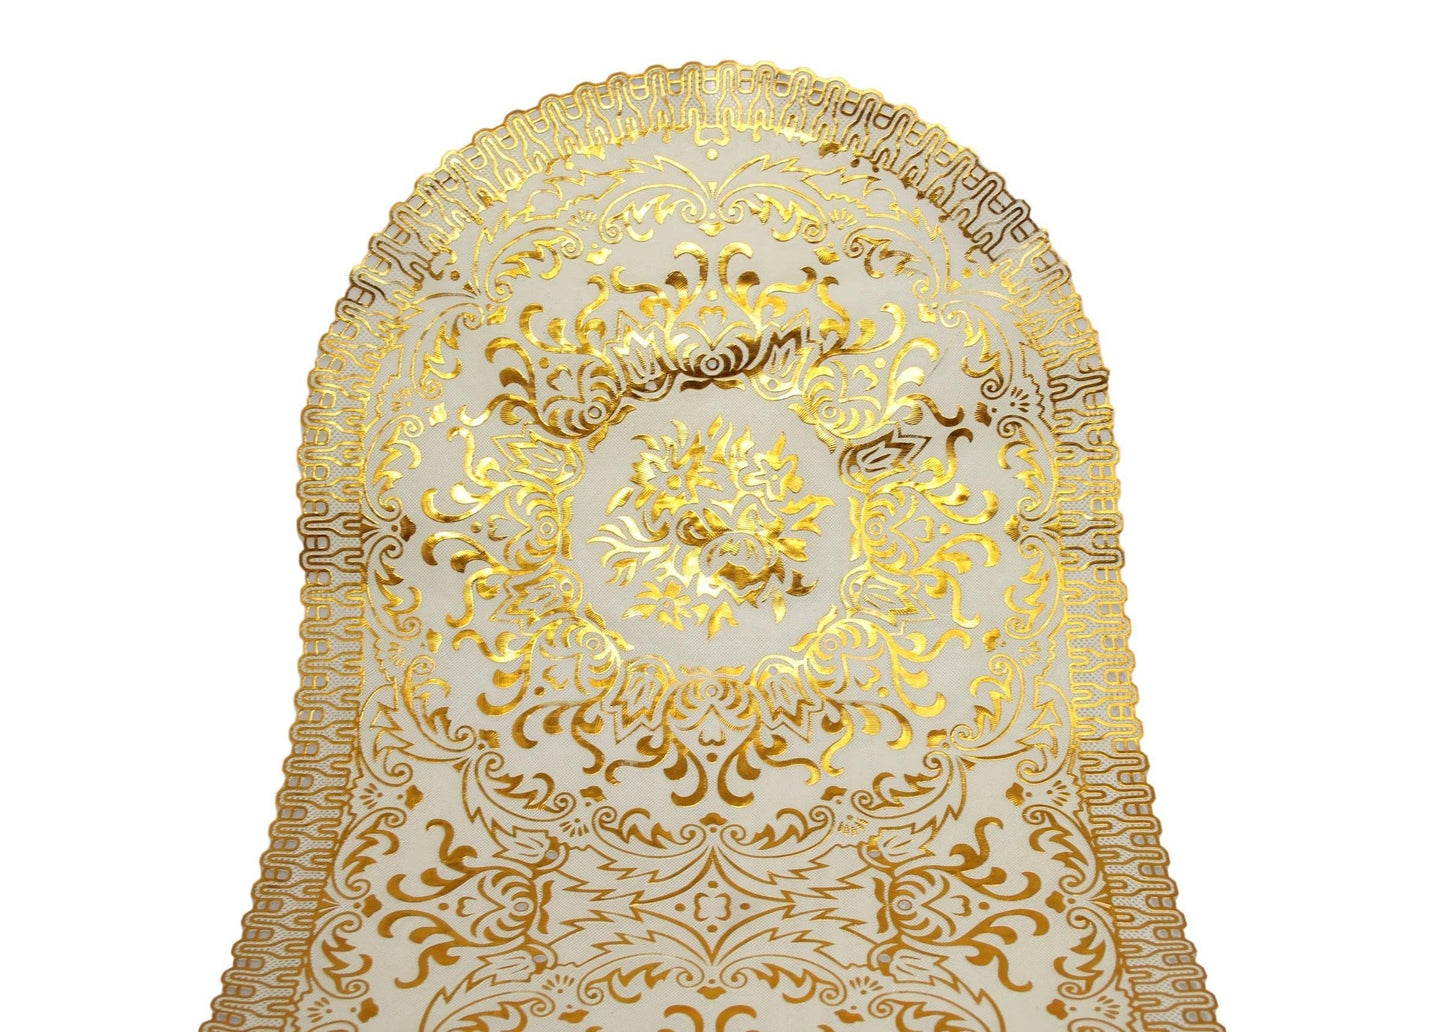 Table Centre Placemat Floral Gold 2 Design Traditional Design Mat 80cm x 40cm 62593 (Large Letter Rate)